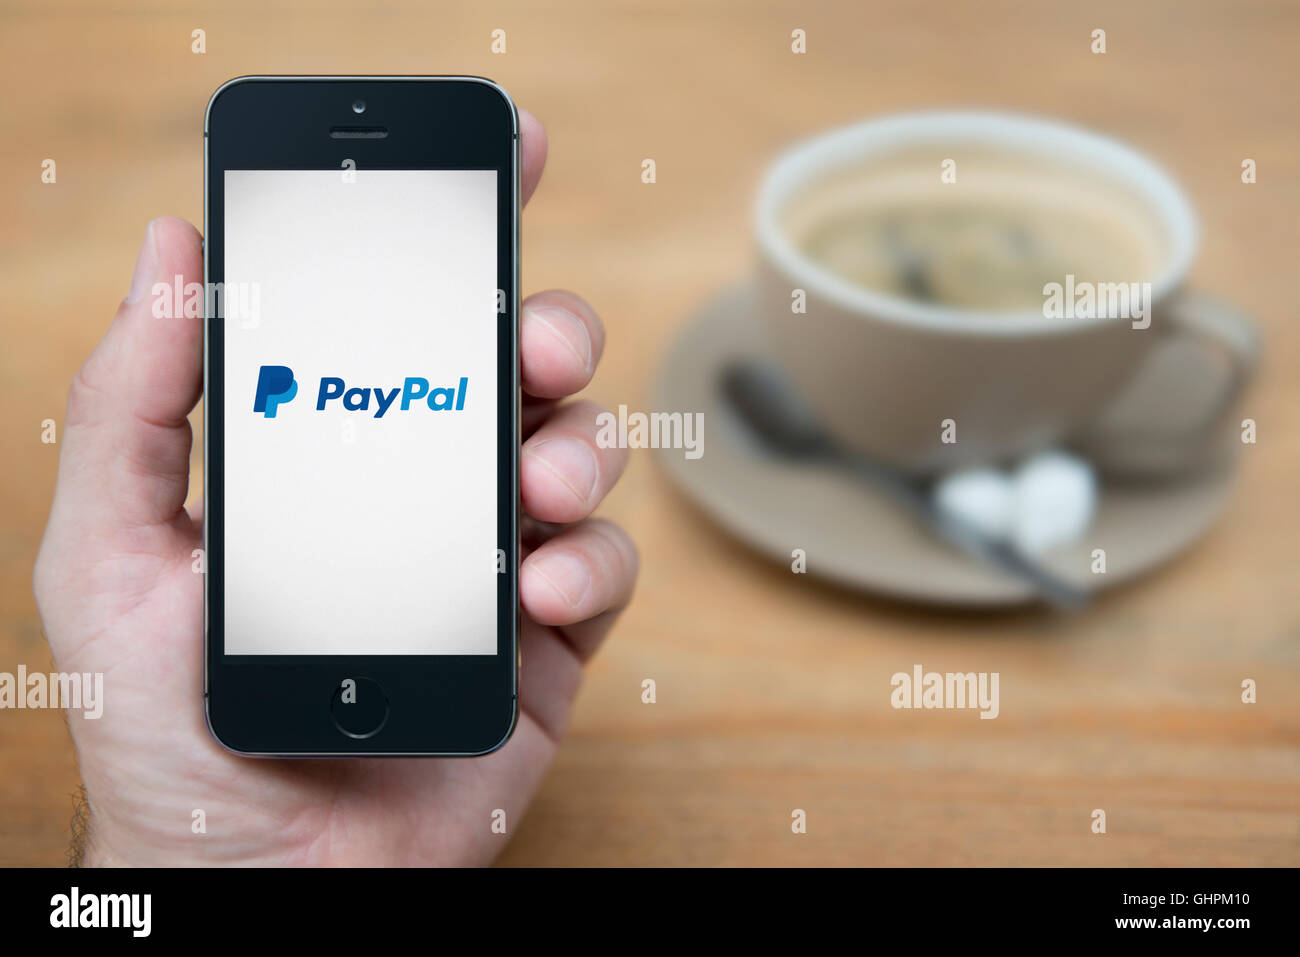 Ein Mann schaut auf seinem iPhone das das PayPal-Logo anzeigt, während bei einer Tasse Kaffee (nur zur redaktionellen Verwendung) saß. Stockfoto